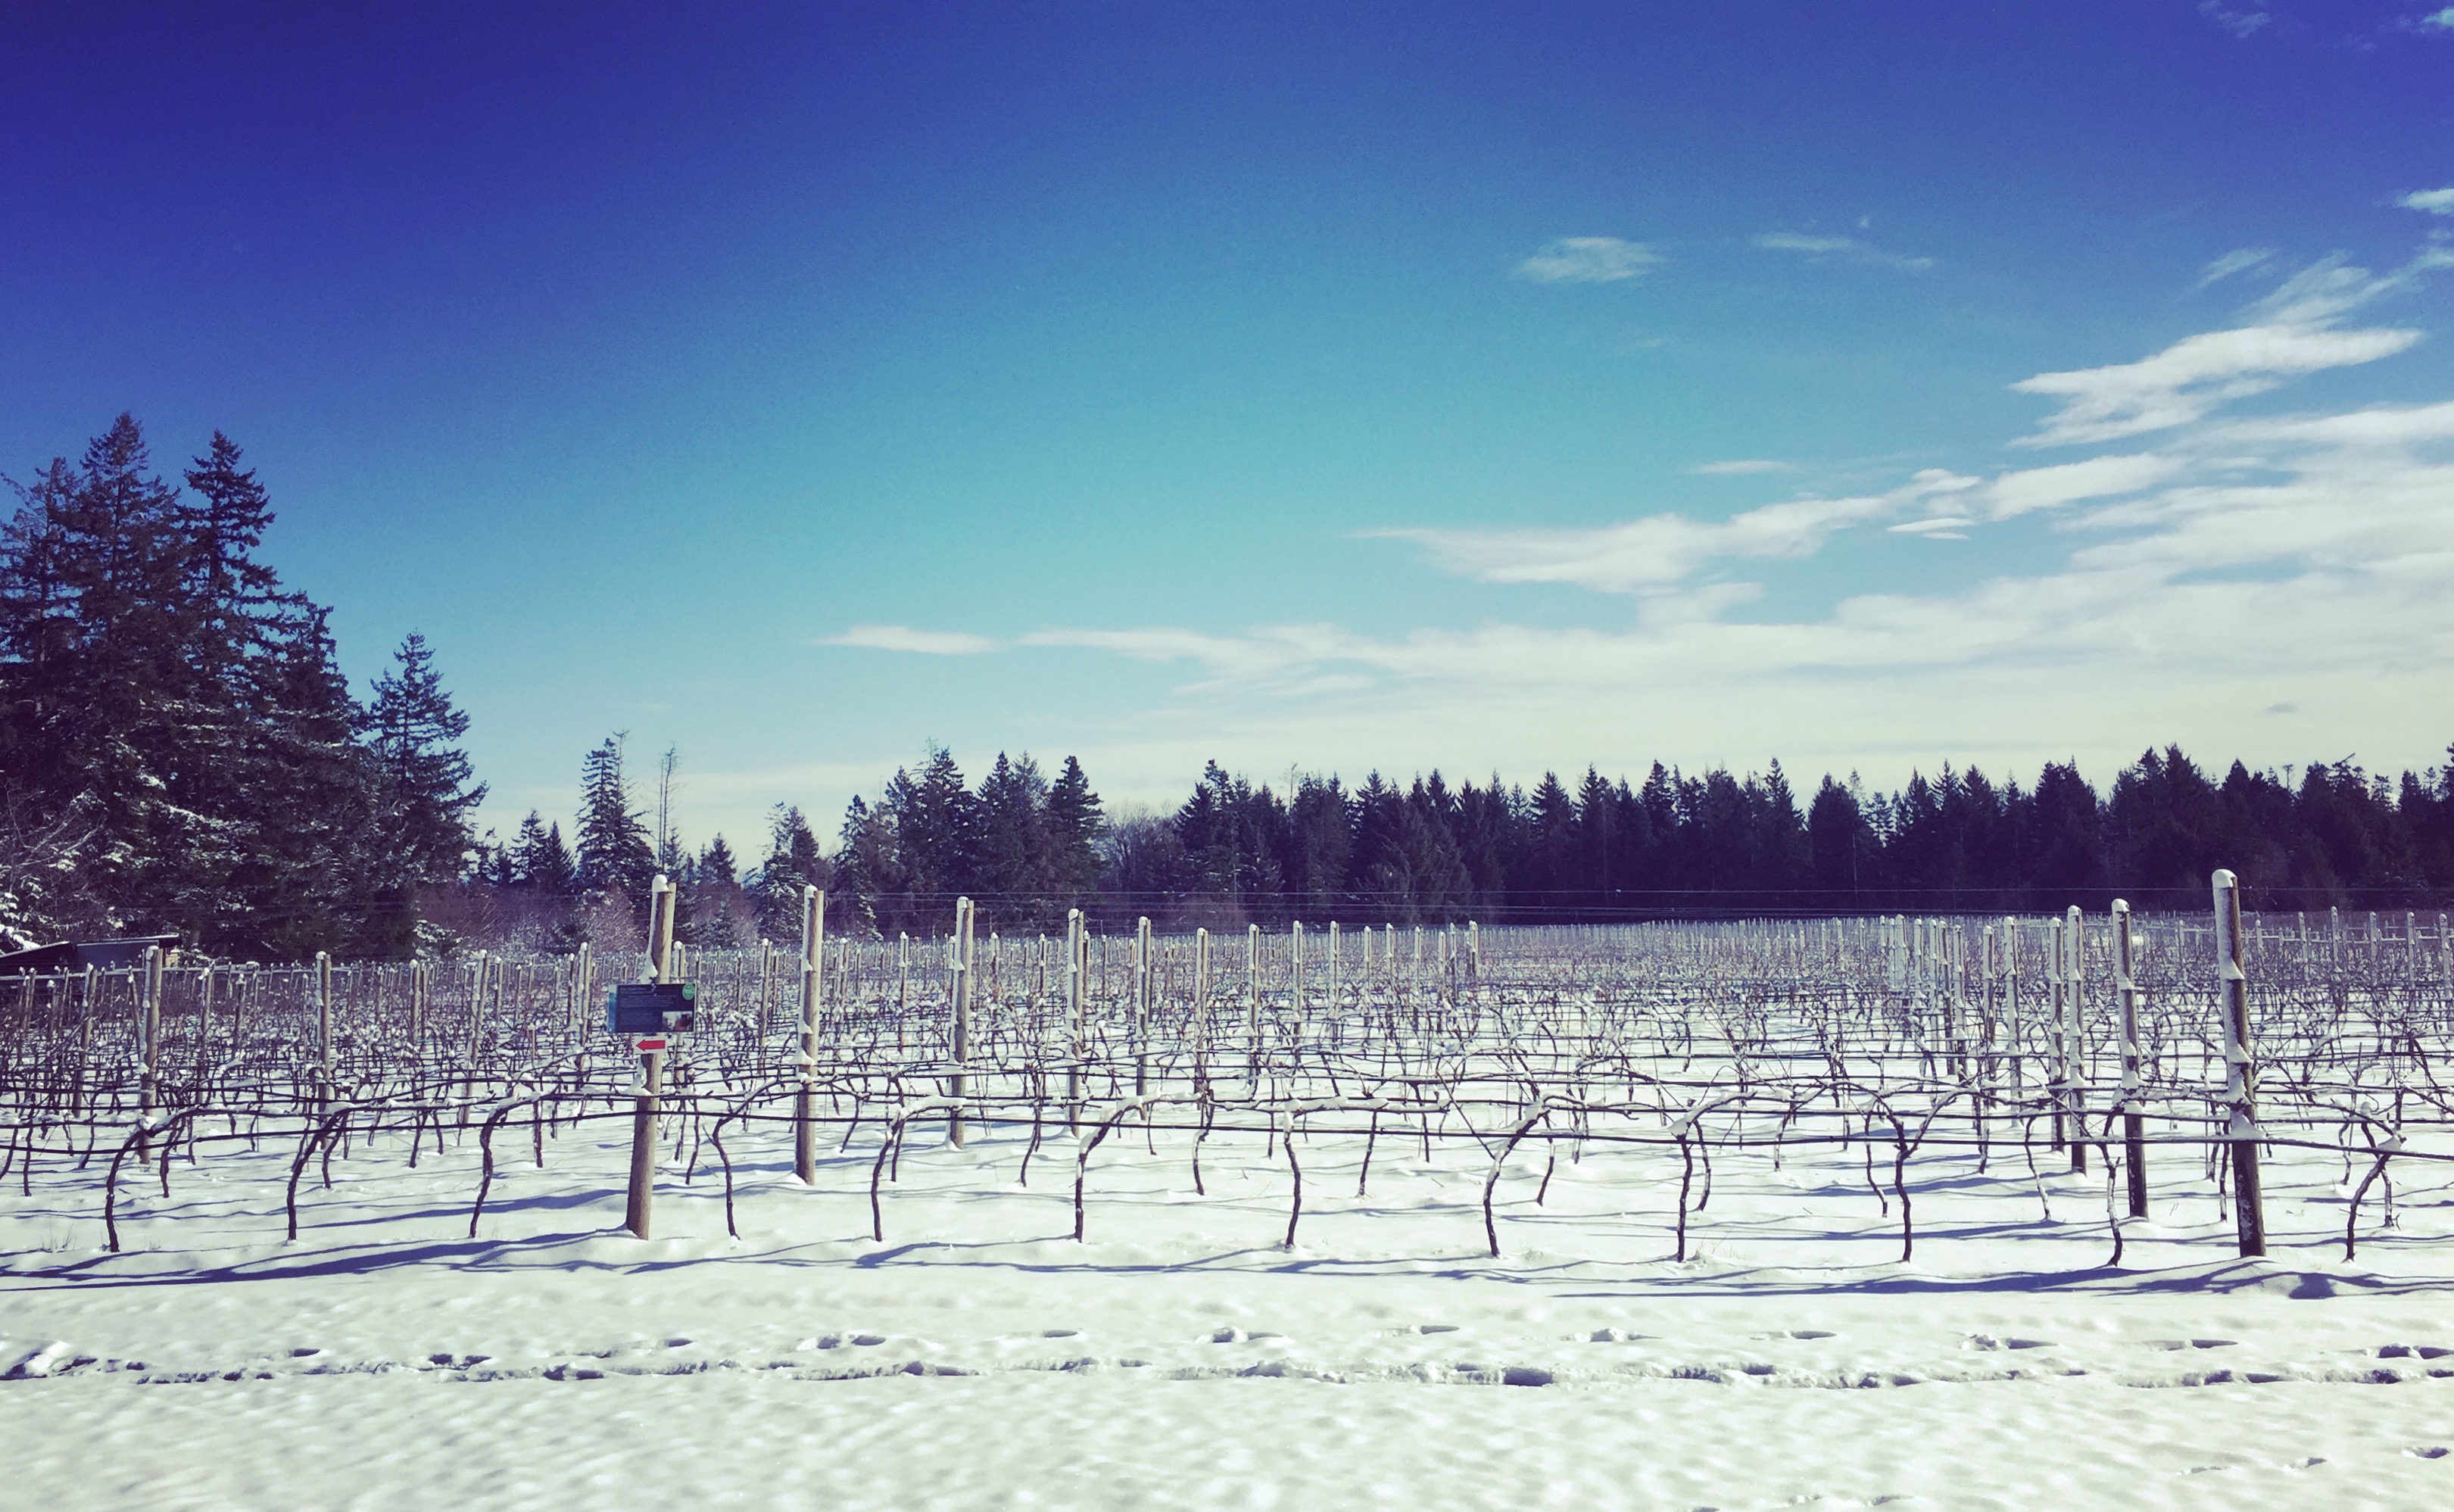 image of wine field in winter